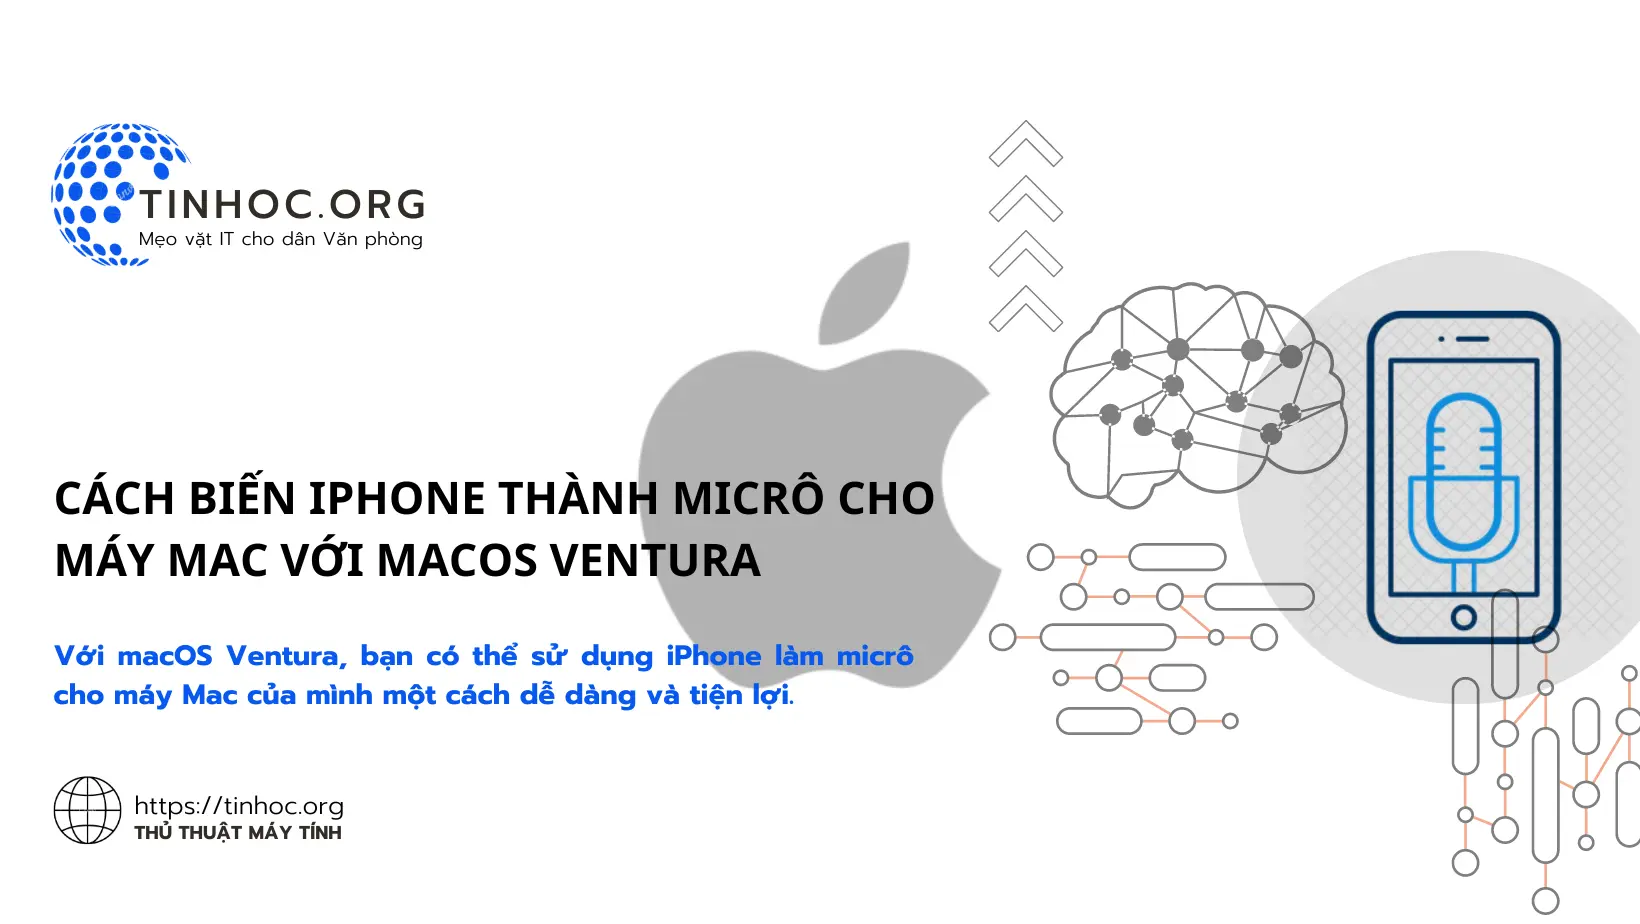 Với macOS Ventura, bạn có thể sử dụng iPhone làm micrô cho máy Mac của mình một cách dễ dàng và tiện lợi.